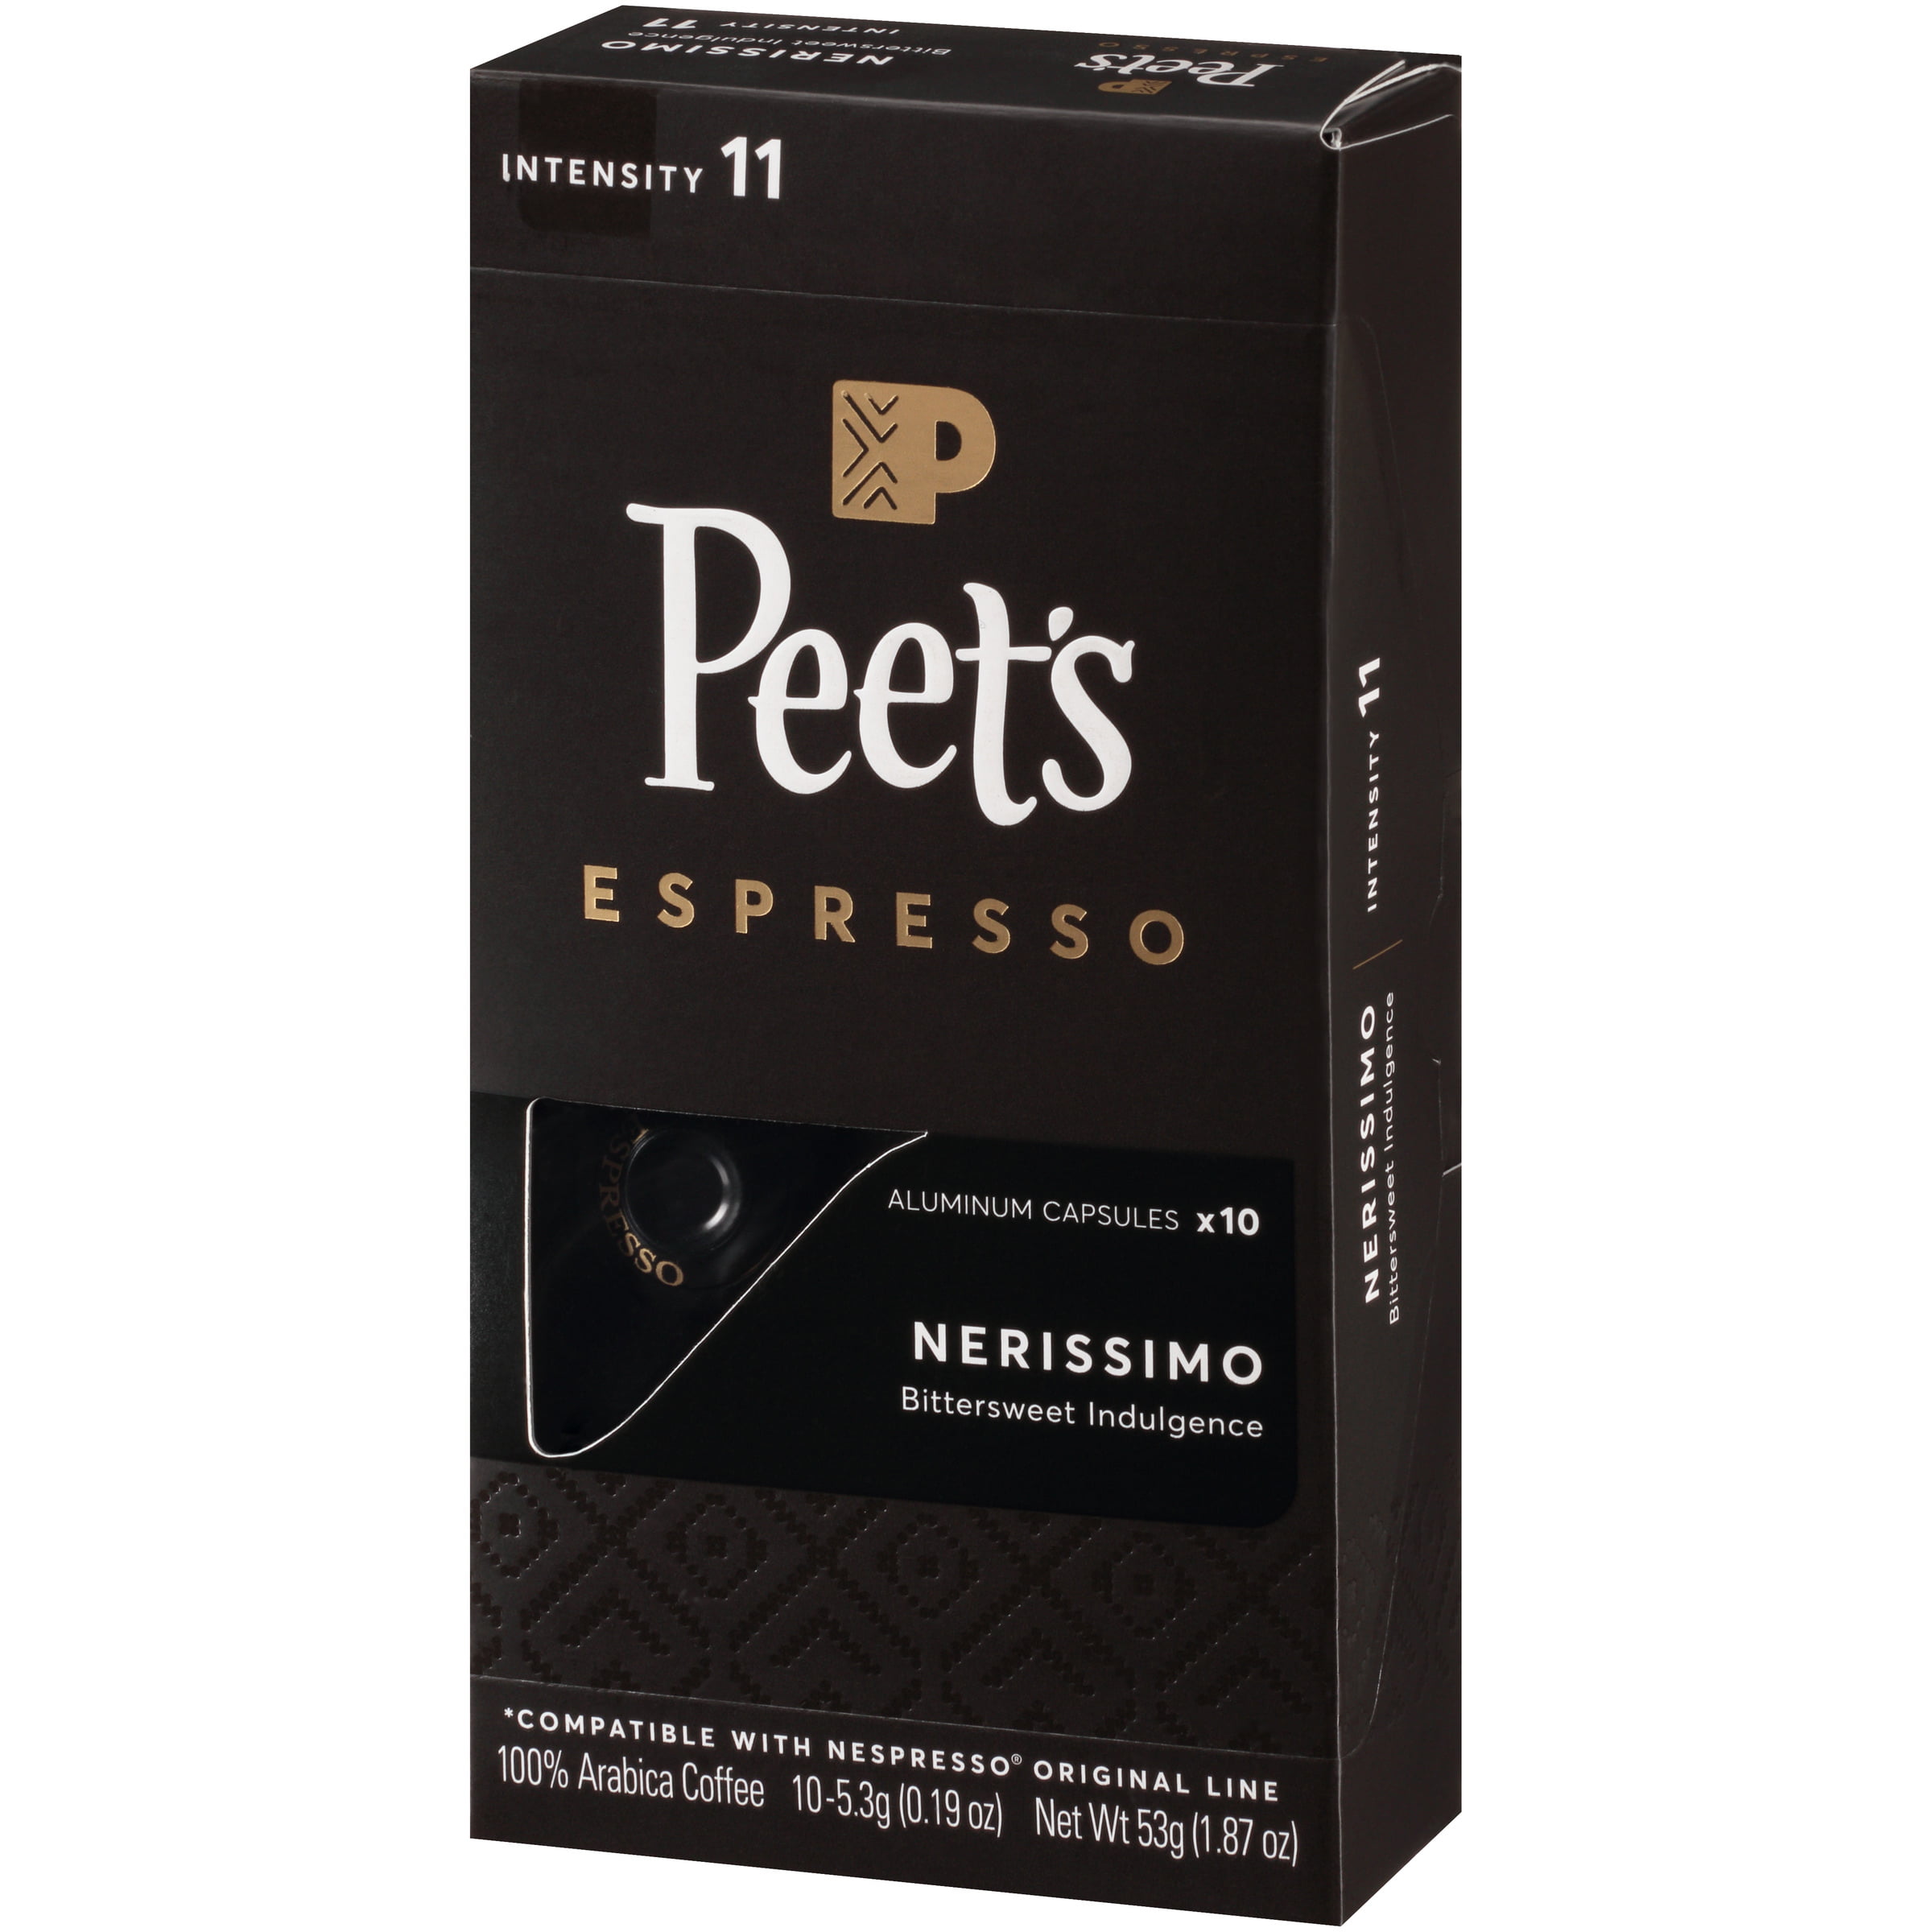 Photo 1 of 5 pack of Peet's Espresso Nerissimo Dark Roast Aluminum Capsules - 10ct/1.87oz